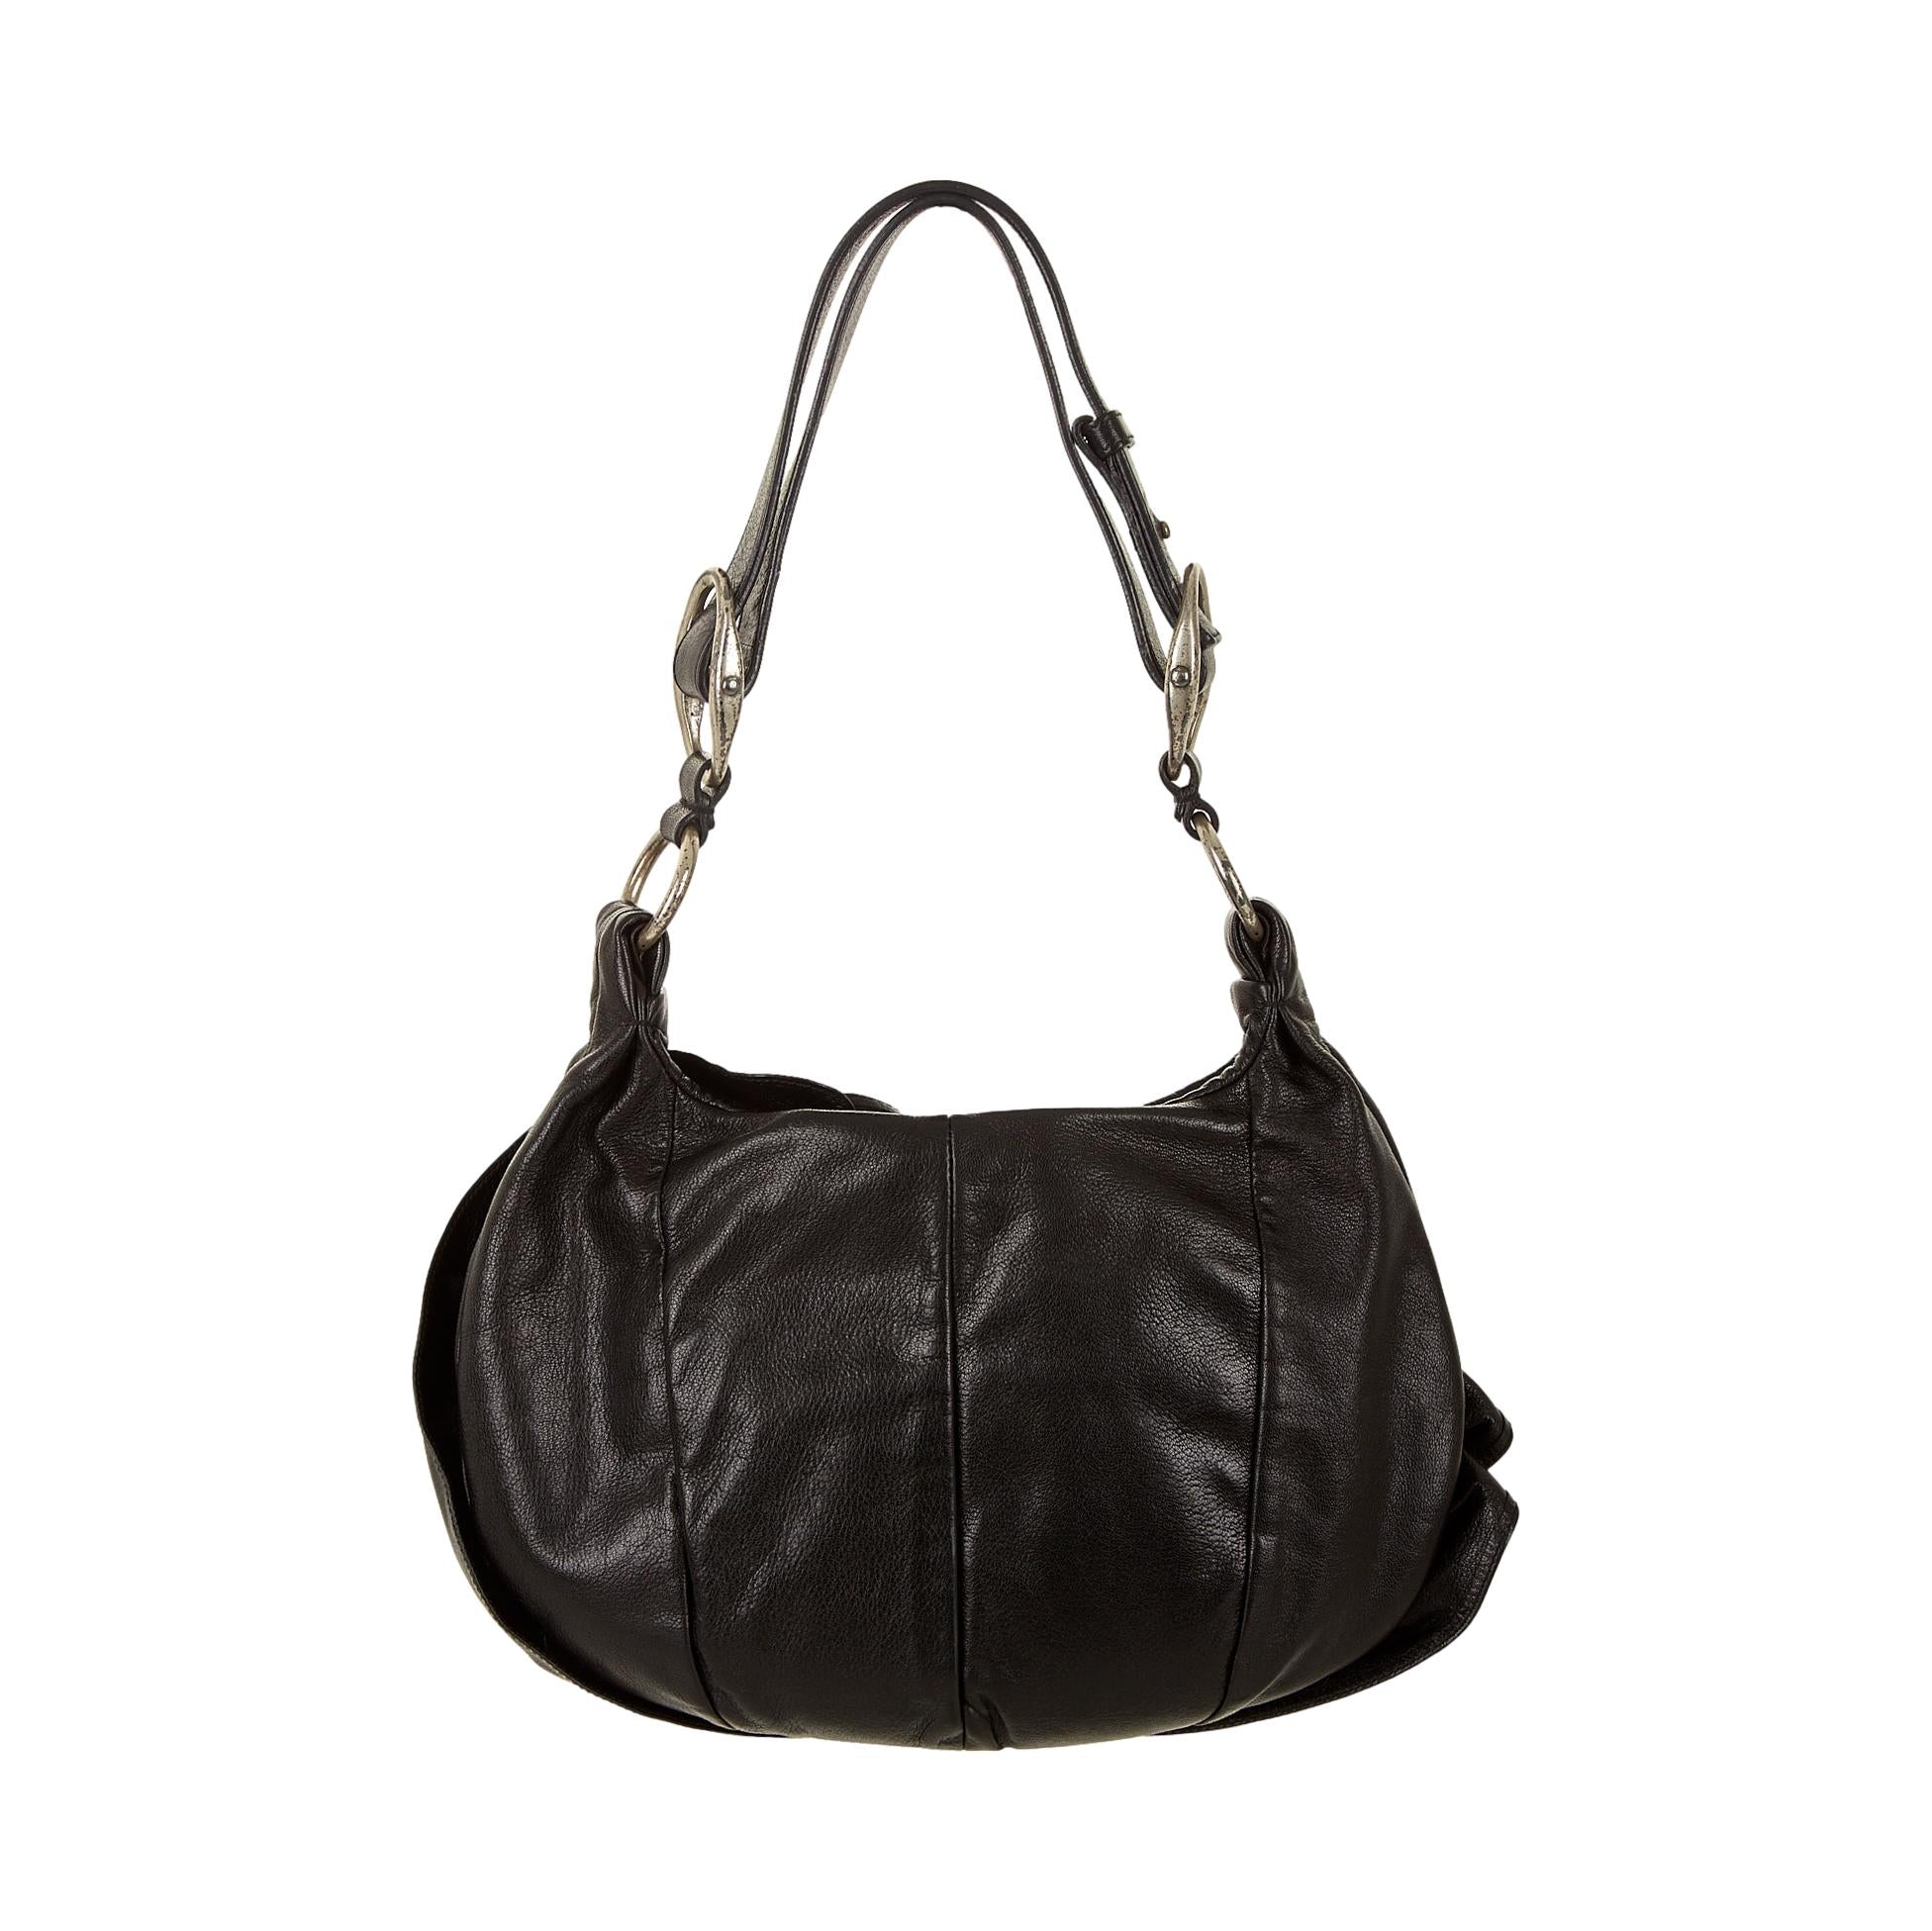 YSL Black Floral Ruffle Shoulder Bag